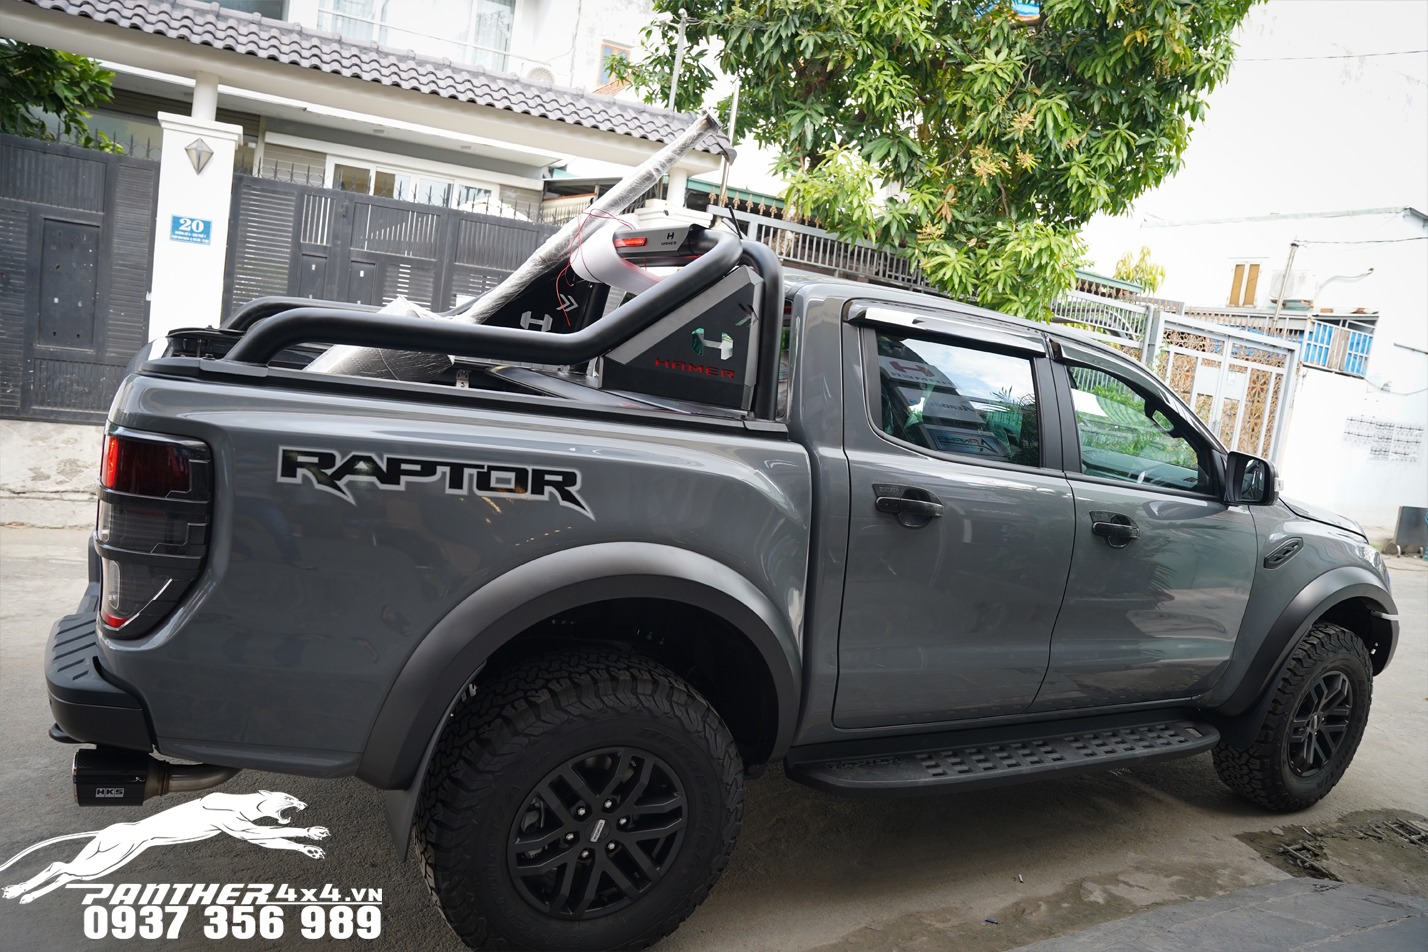 Độ body kit Raptor cho xe bán tải Ford Ranger được nhiều người thắc mắc không biết có phải gồm cản trước và mặc calang không hay còn bộ phận nào khác nữa. Để giải đáp thắc mắc này hôm nay chúng tôi chia sẻ cho các bạn đọc một số thông tin về sản phẩm.